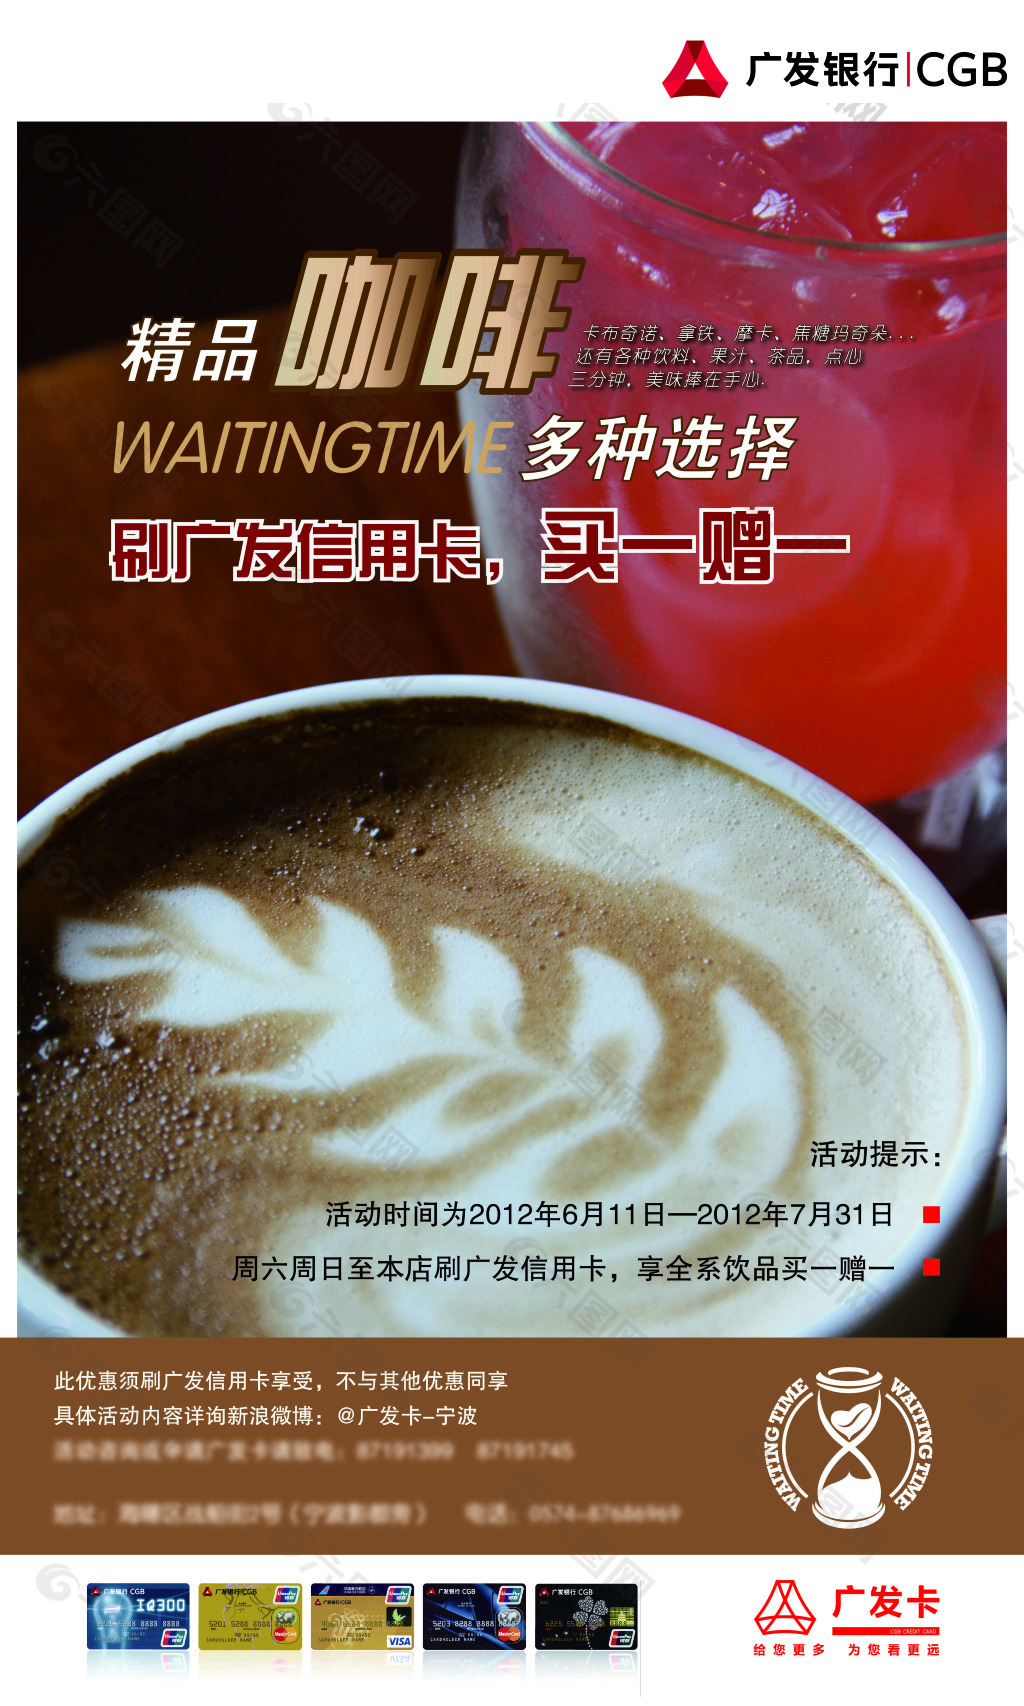 广发银行联合咖啡馆海报 平面海报设计